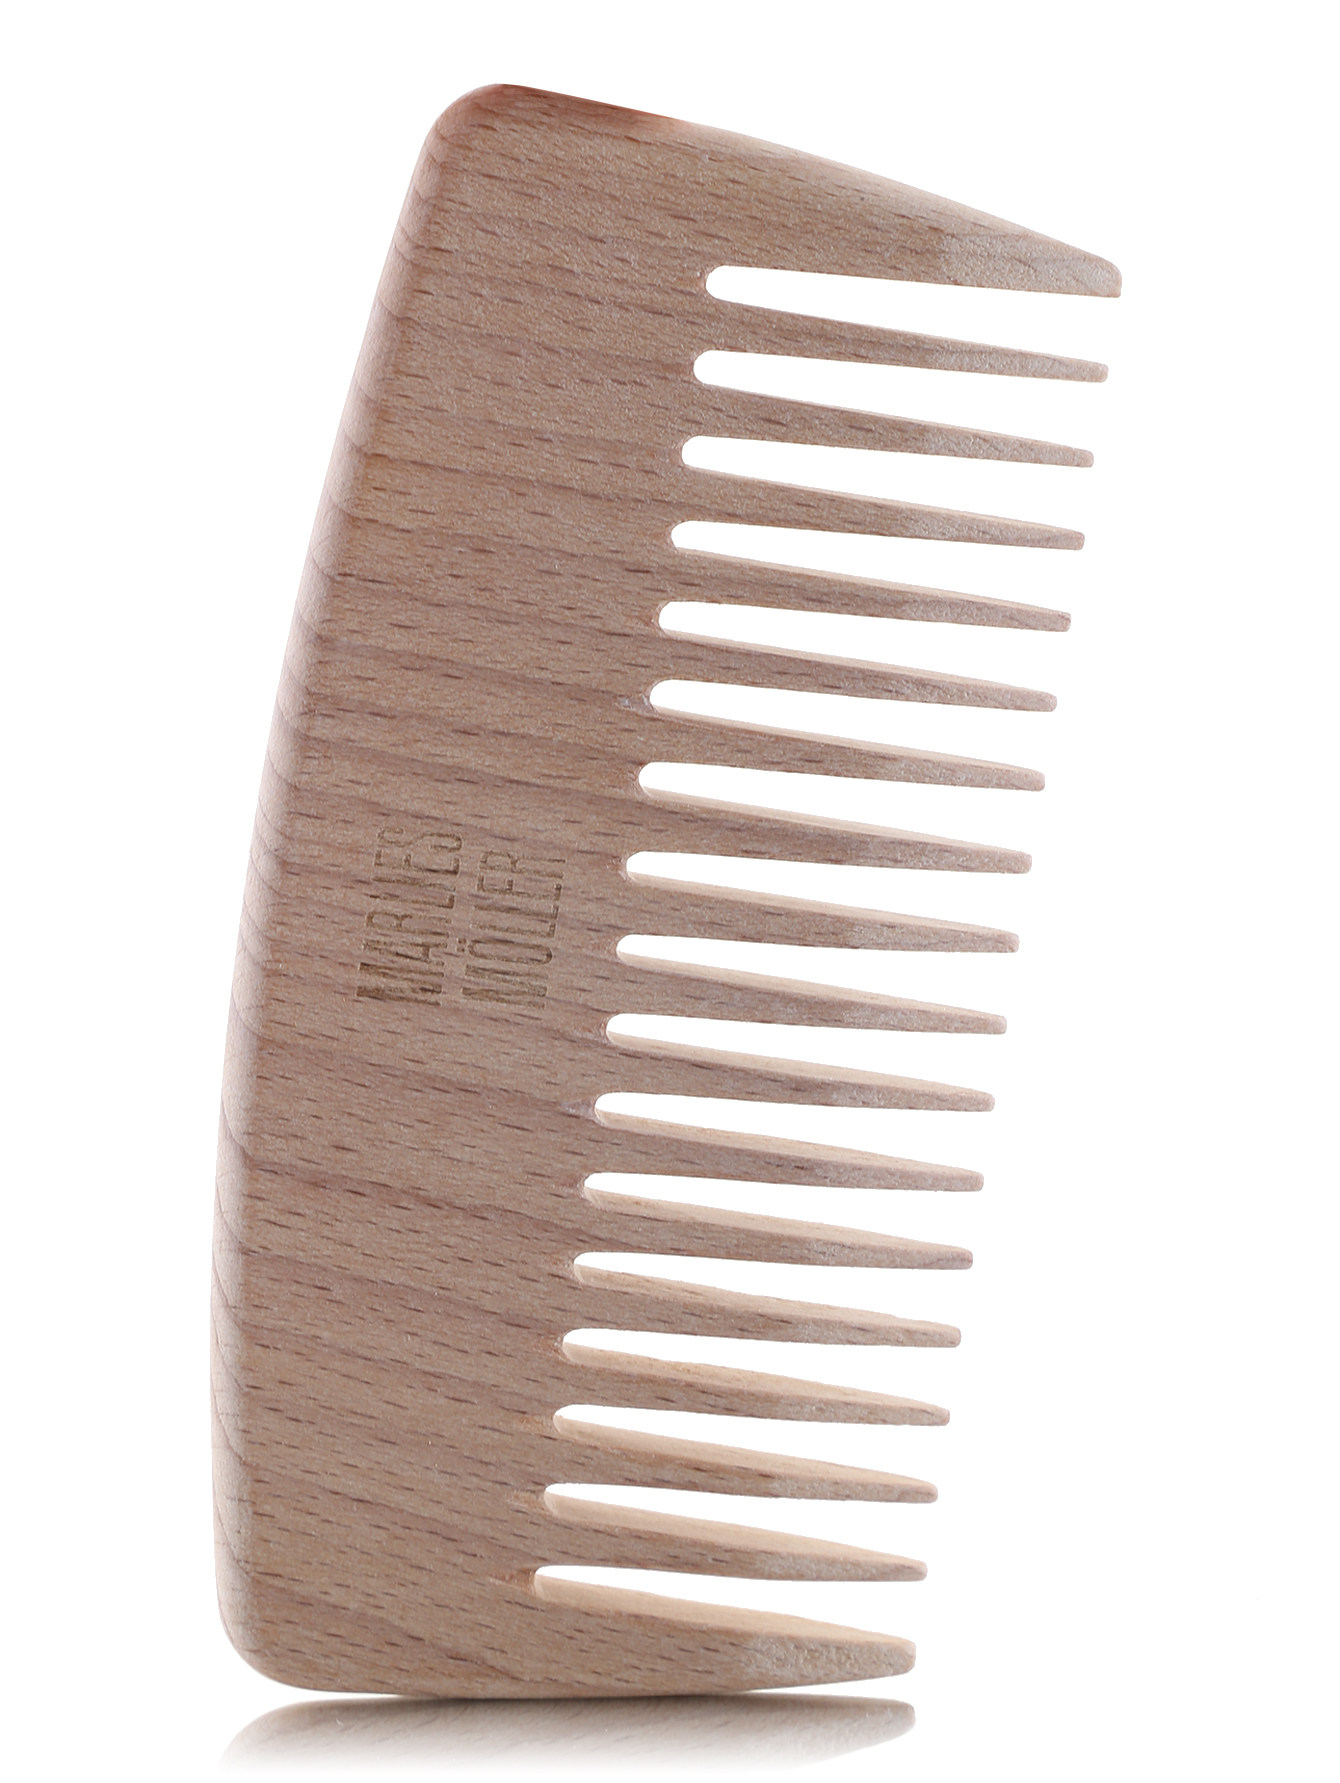  Расческа деревянная - Essential - Общий вид